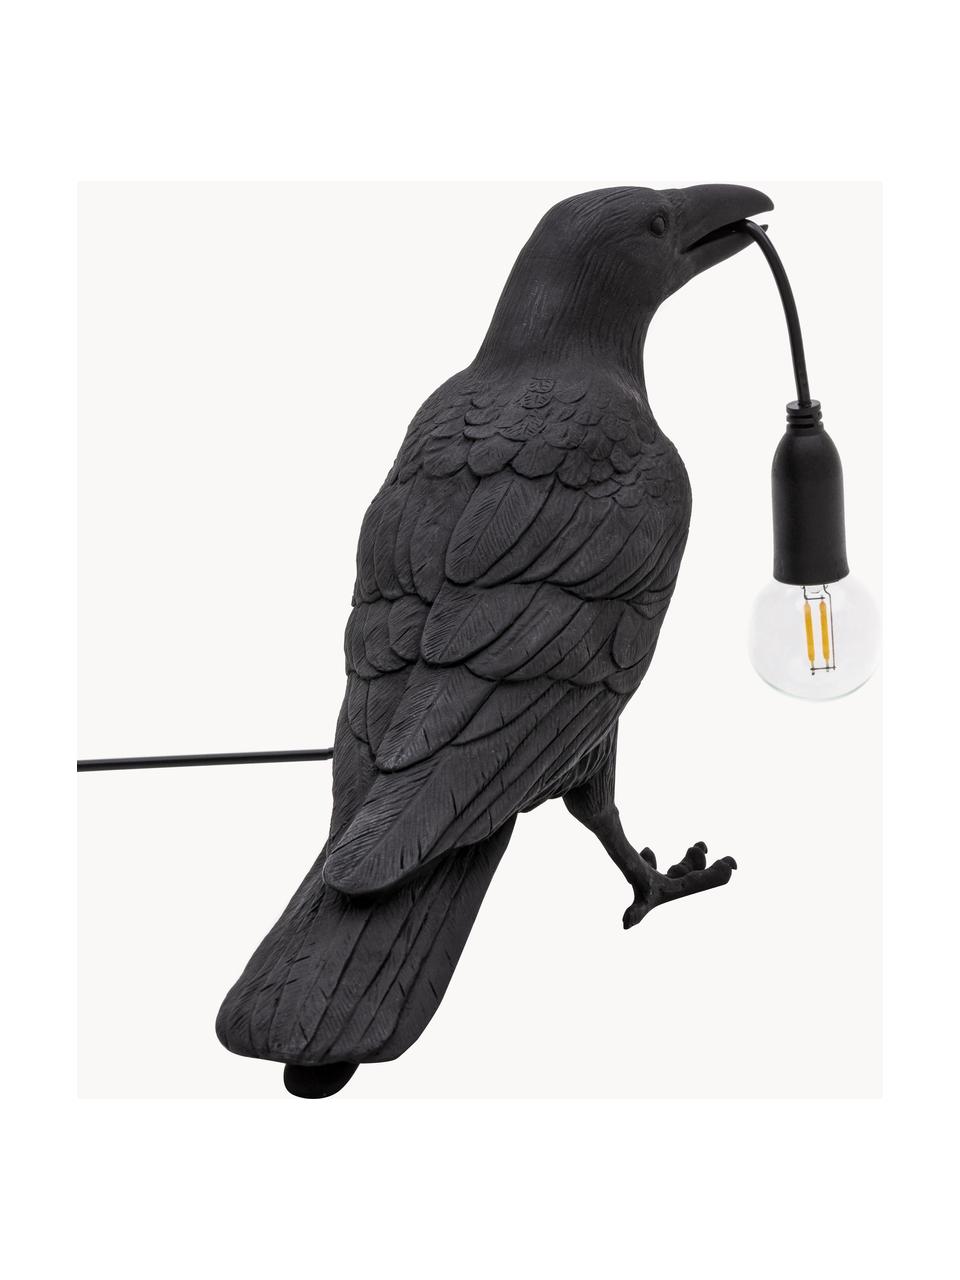 Lampe à poser design Bird, Noir, larg. 33 x haut. 12 cm